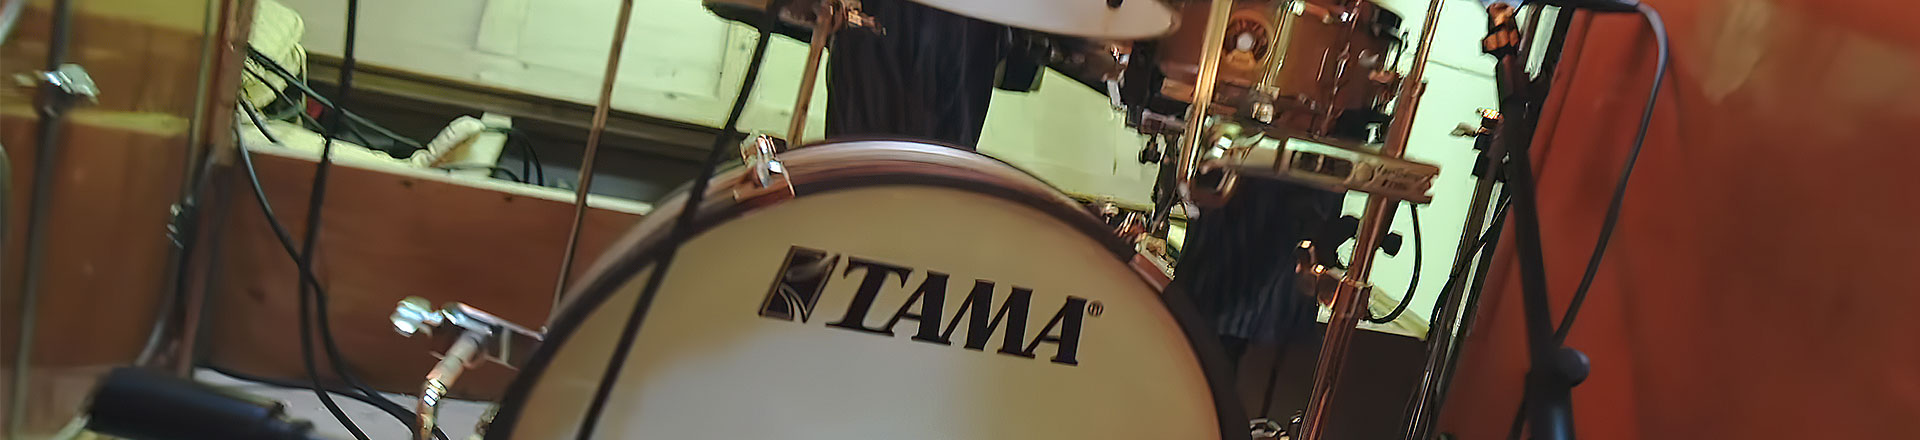 Club-Jam Pancake - Najbardziej kompaktowy zestaw od TAMA